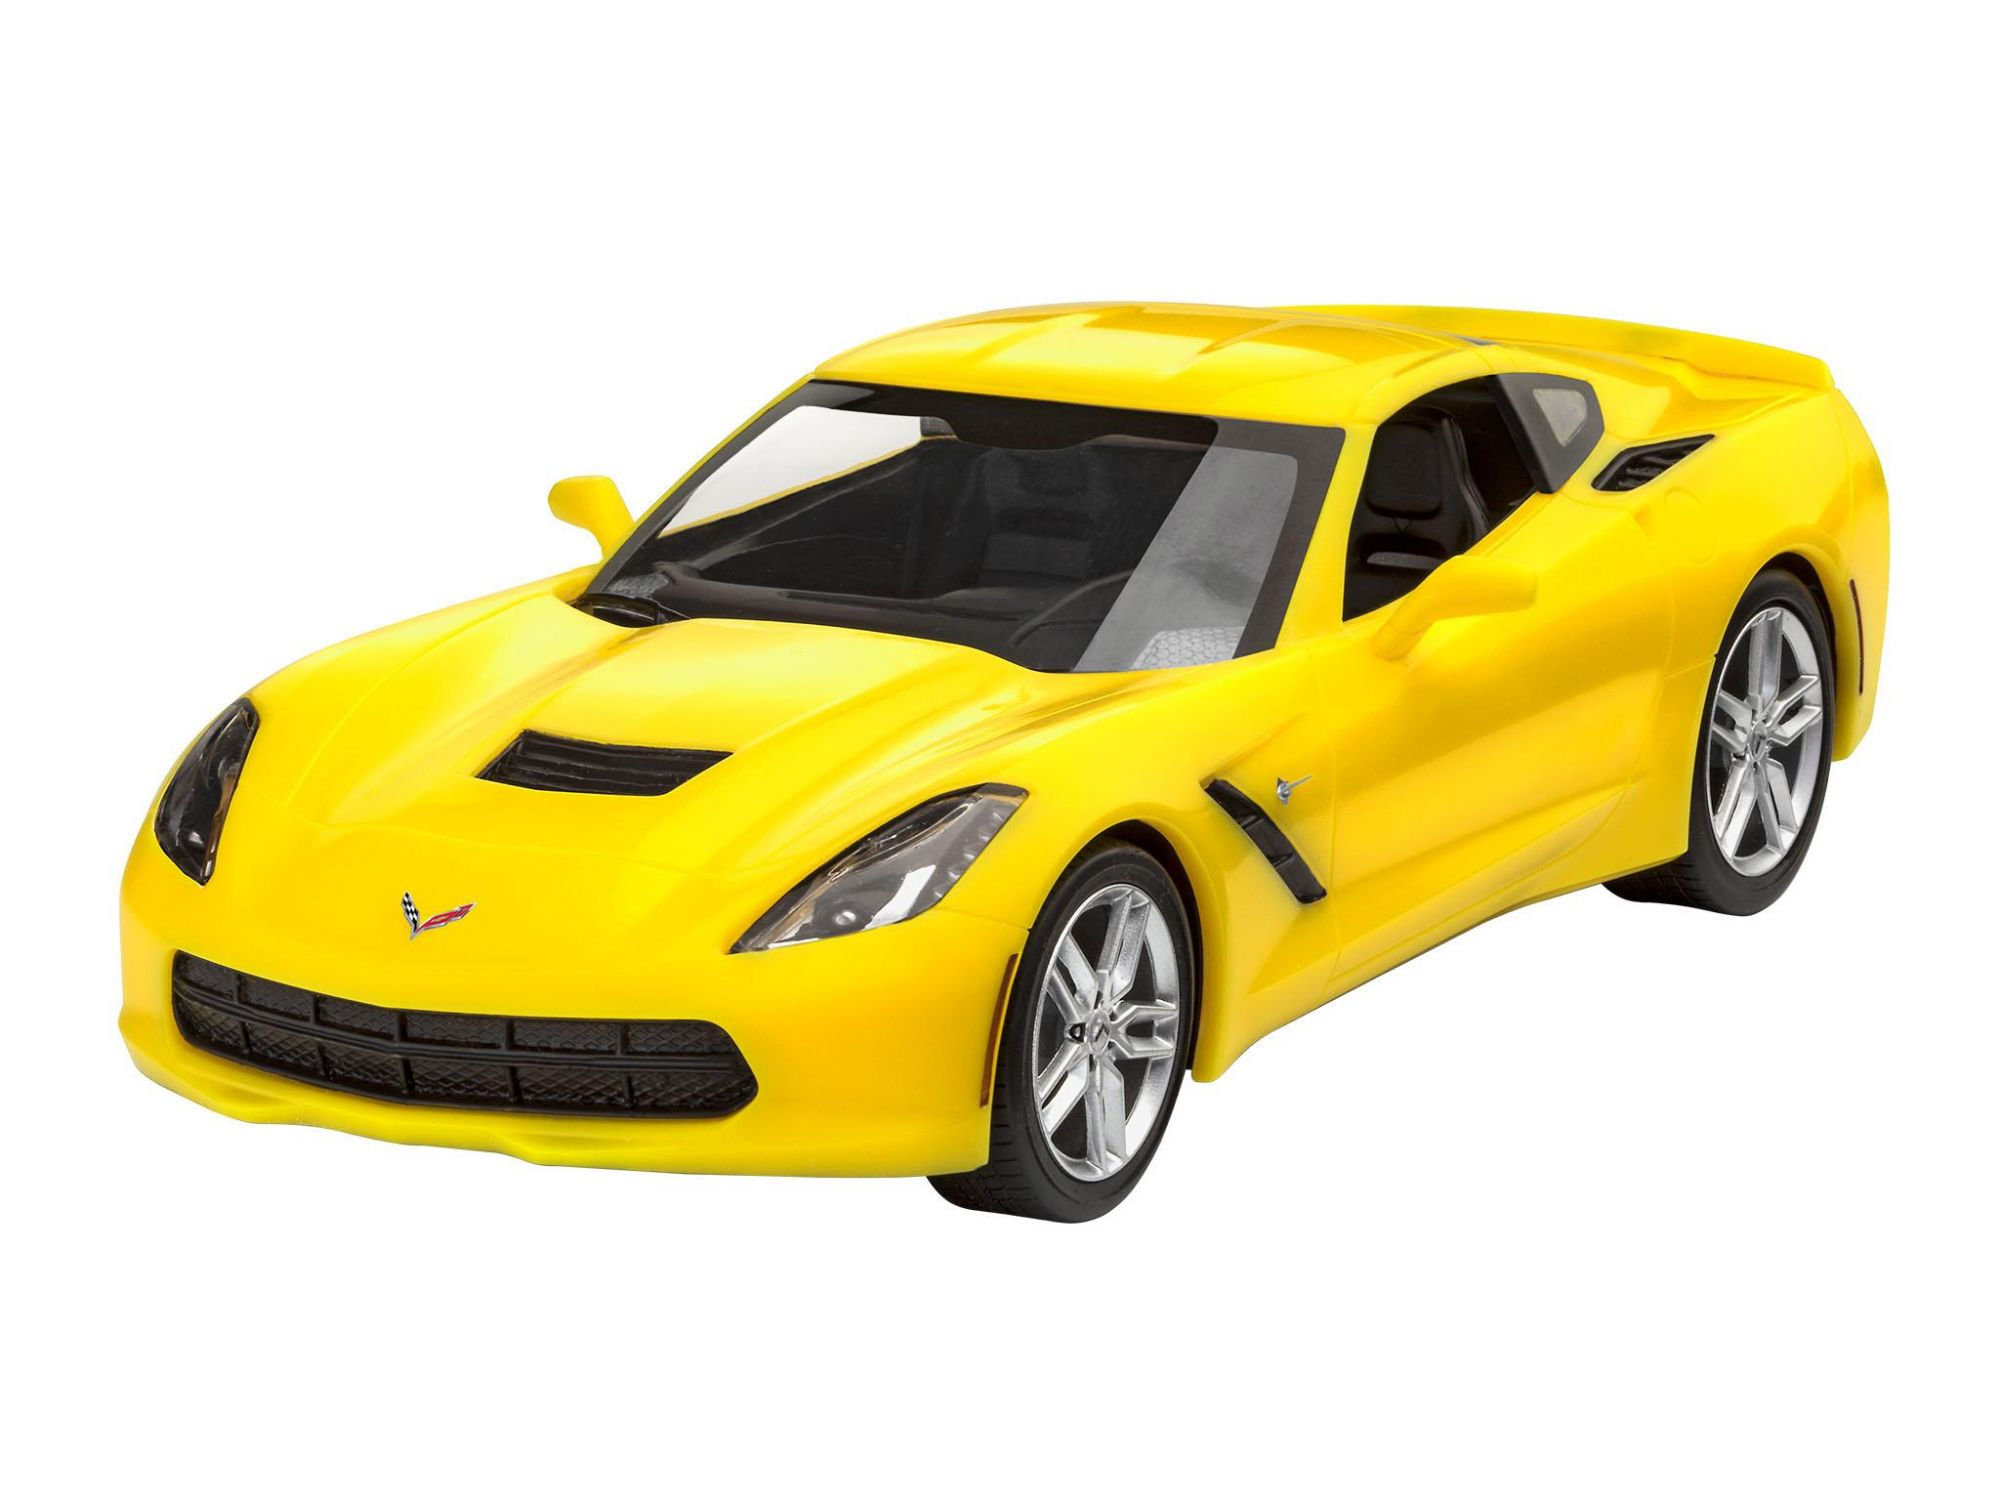 Corvette Stingray 2014 - 1/25 - Easy-click  kit Para Montar Revell 07449 